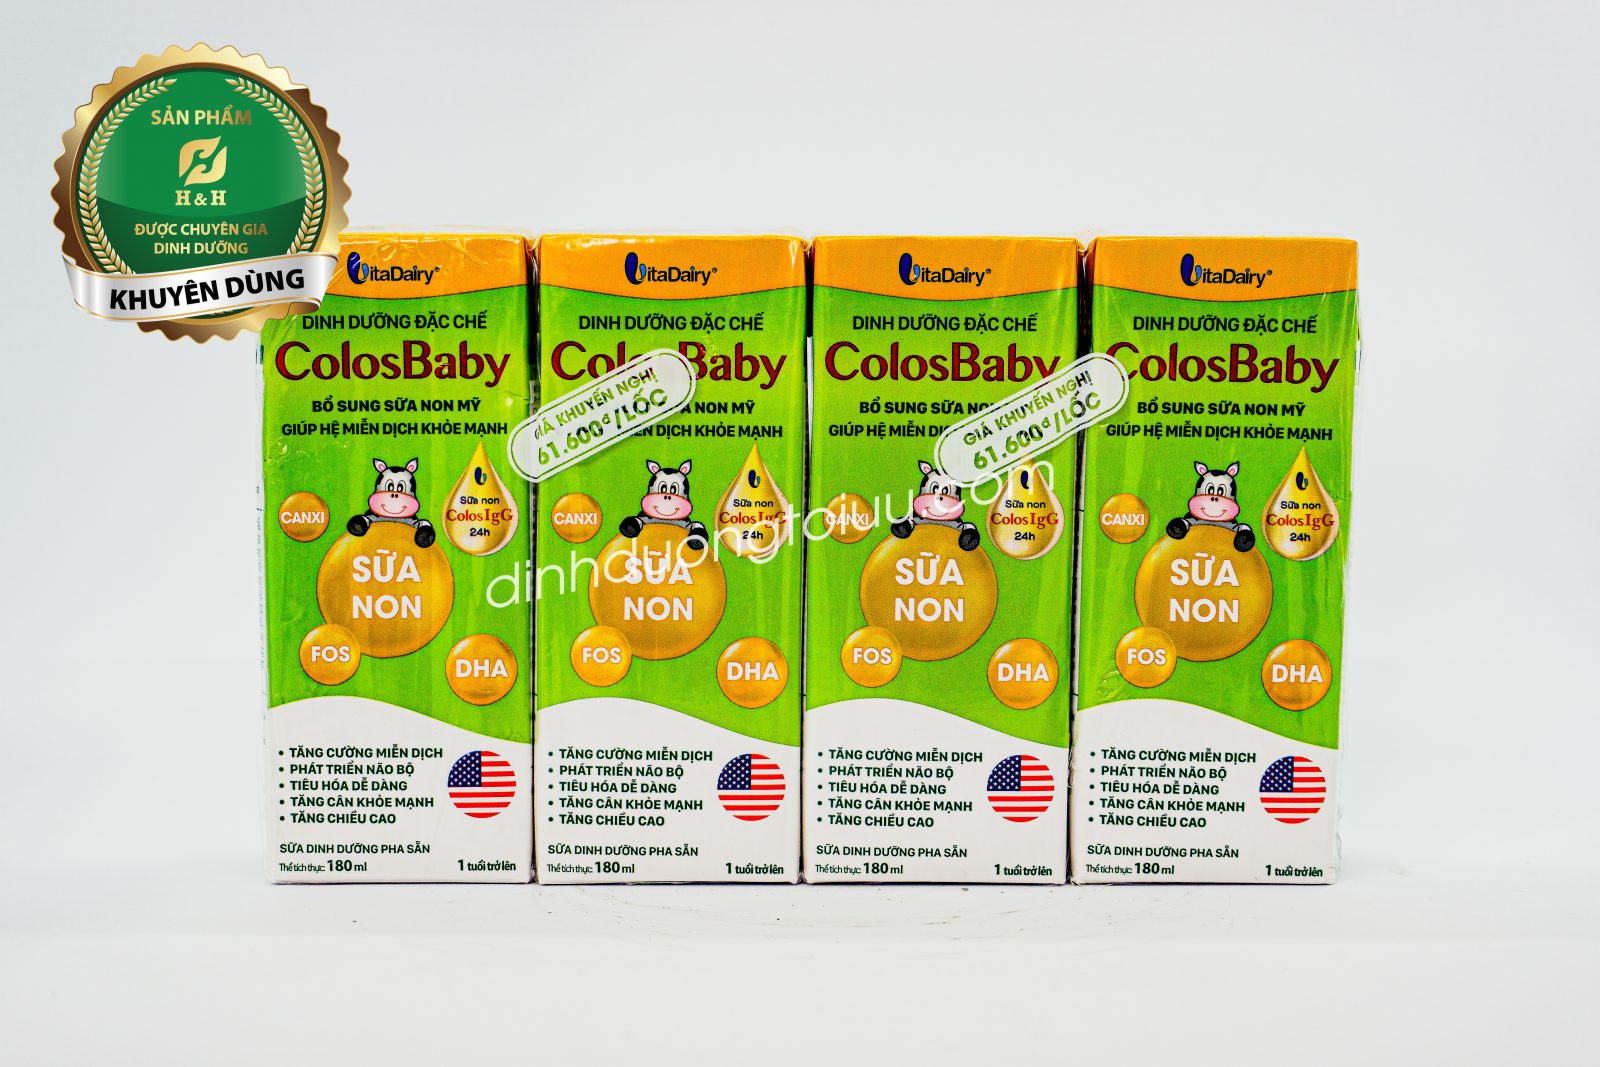 Sữa non pha sẵn ColosBaby của VitaDairy- Tăng cường miễn dịch, phát triển chiều cao ở trẻ